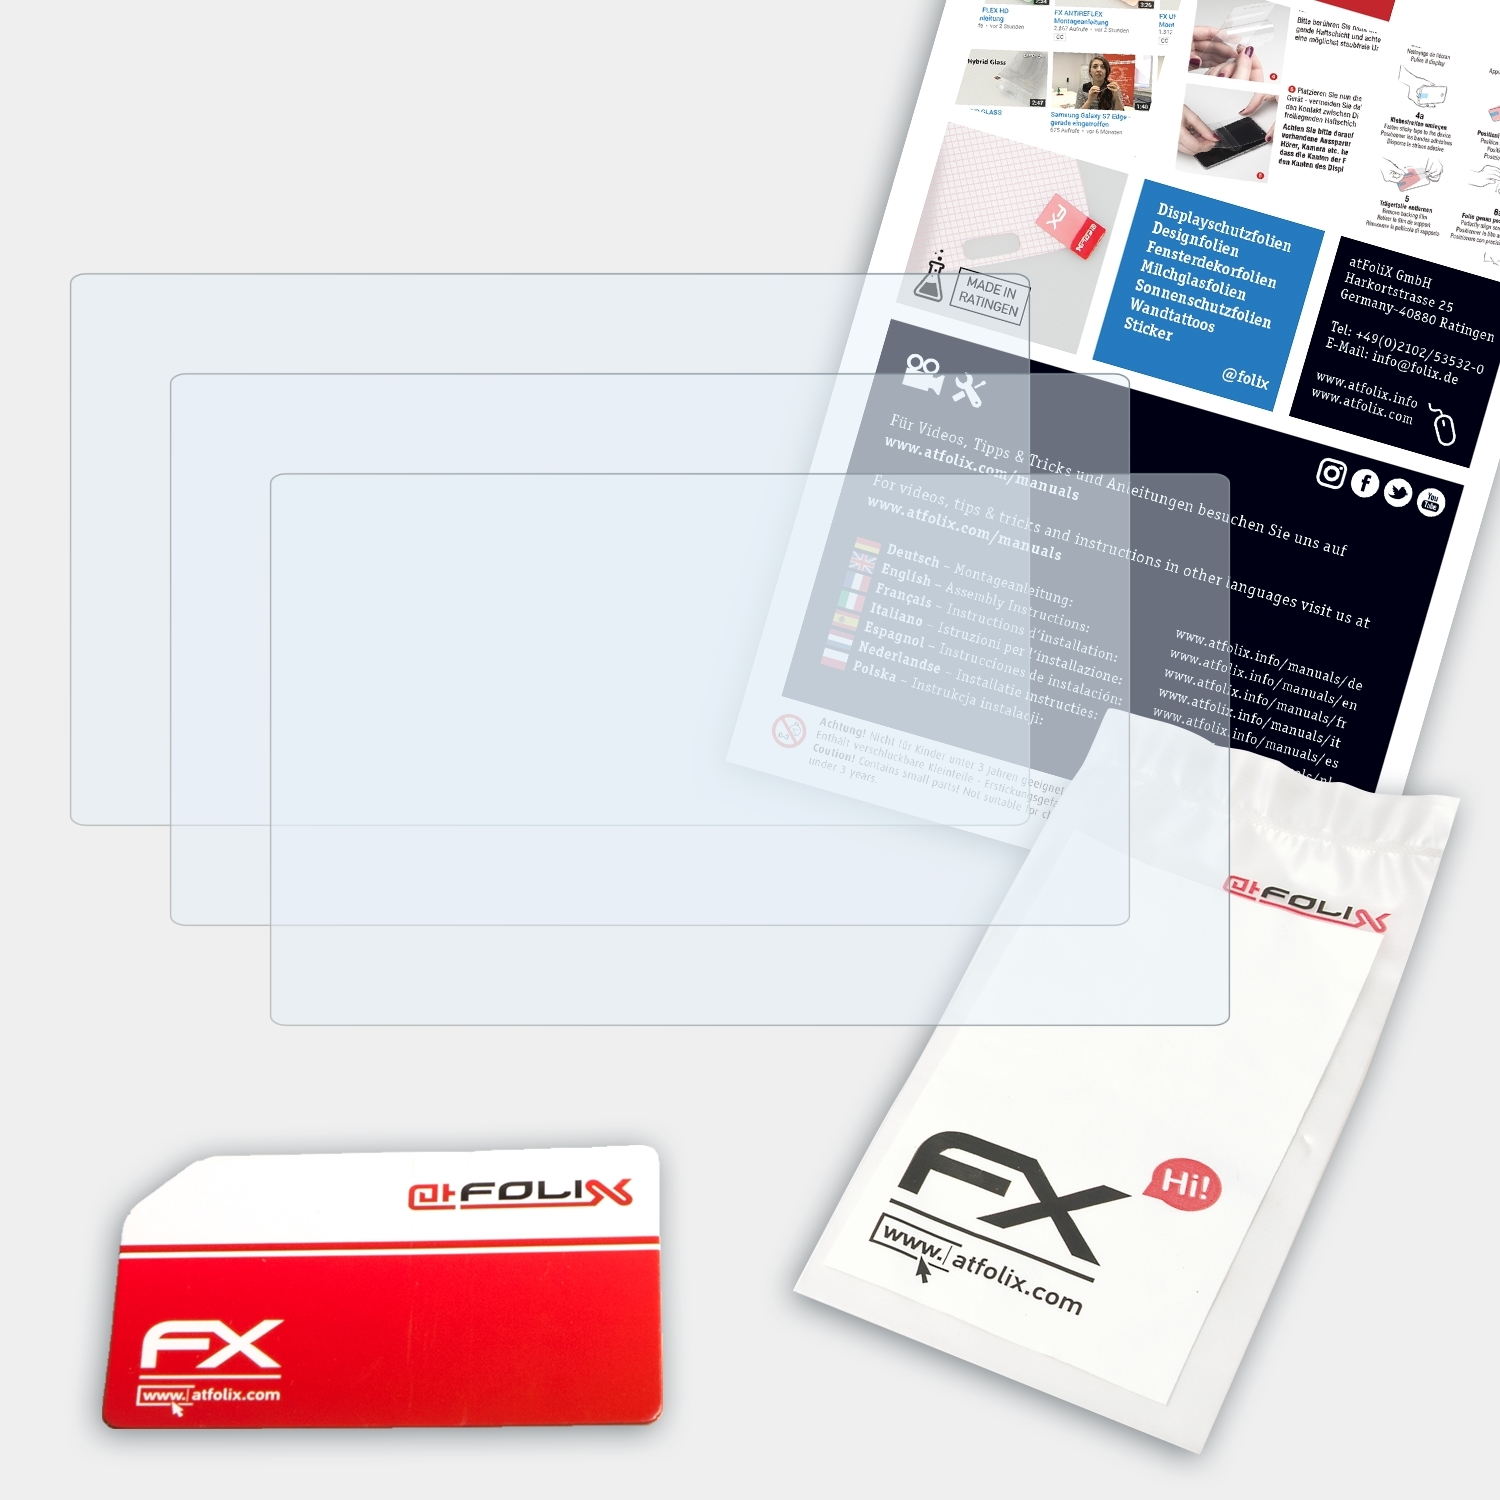 (2009)) ATFOLIX 750 Live GO Displayschutz(für FX-Clear TomTom 3x